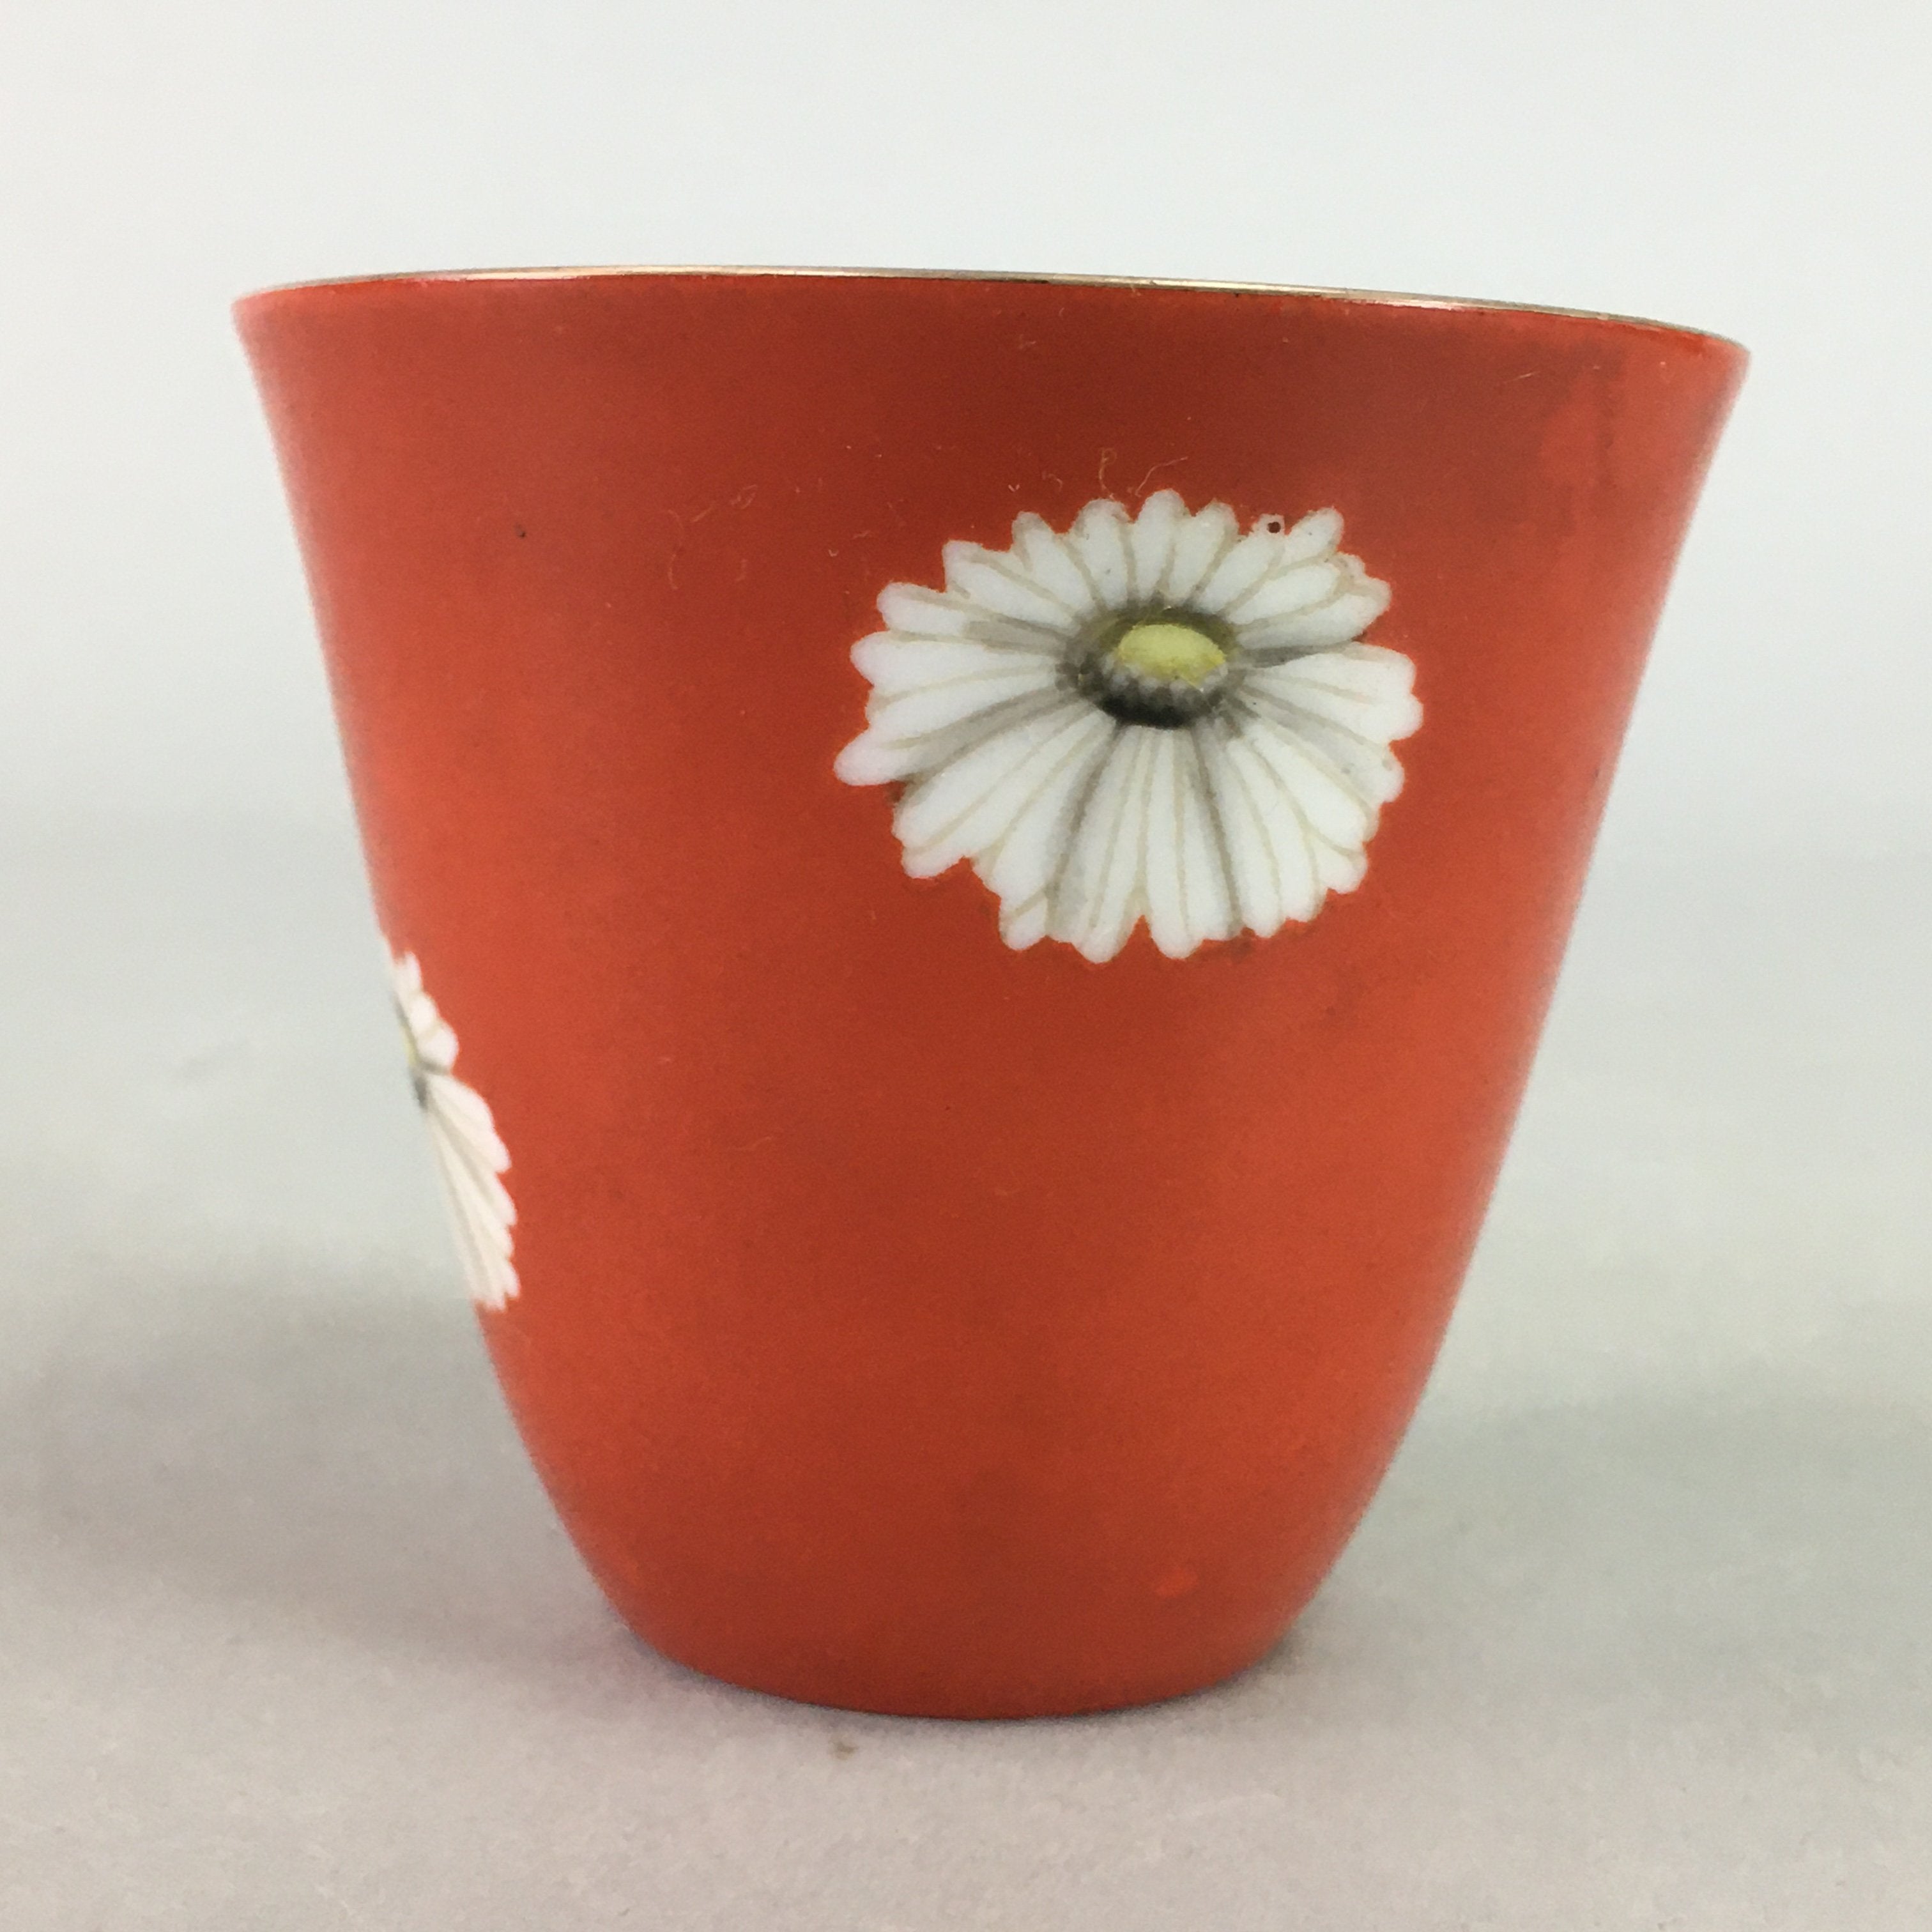 Japanese Porcelain Teacup Mug Vtg Yunomi Floral Red White PT968